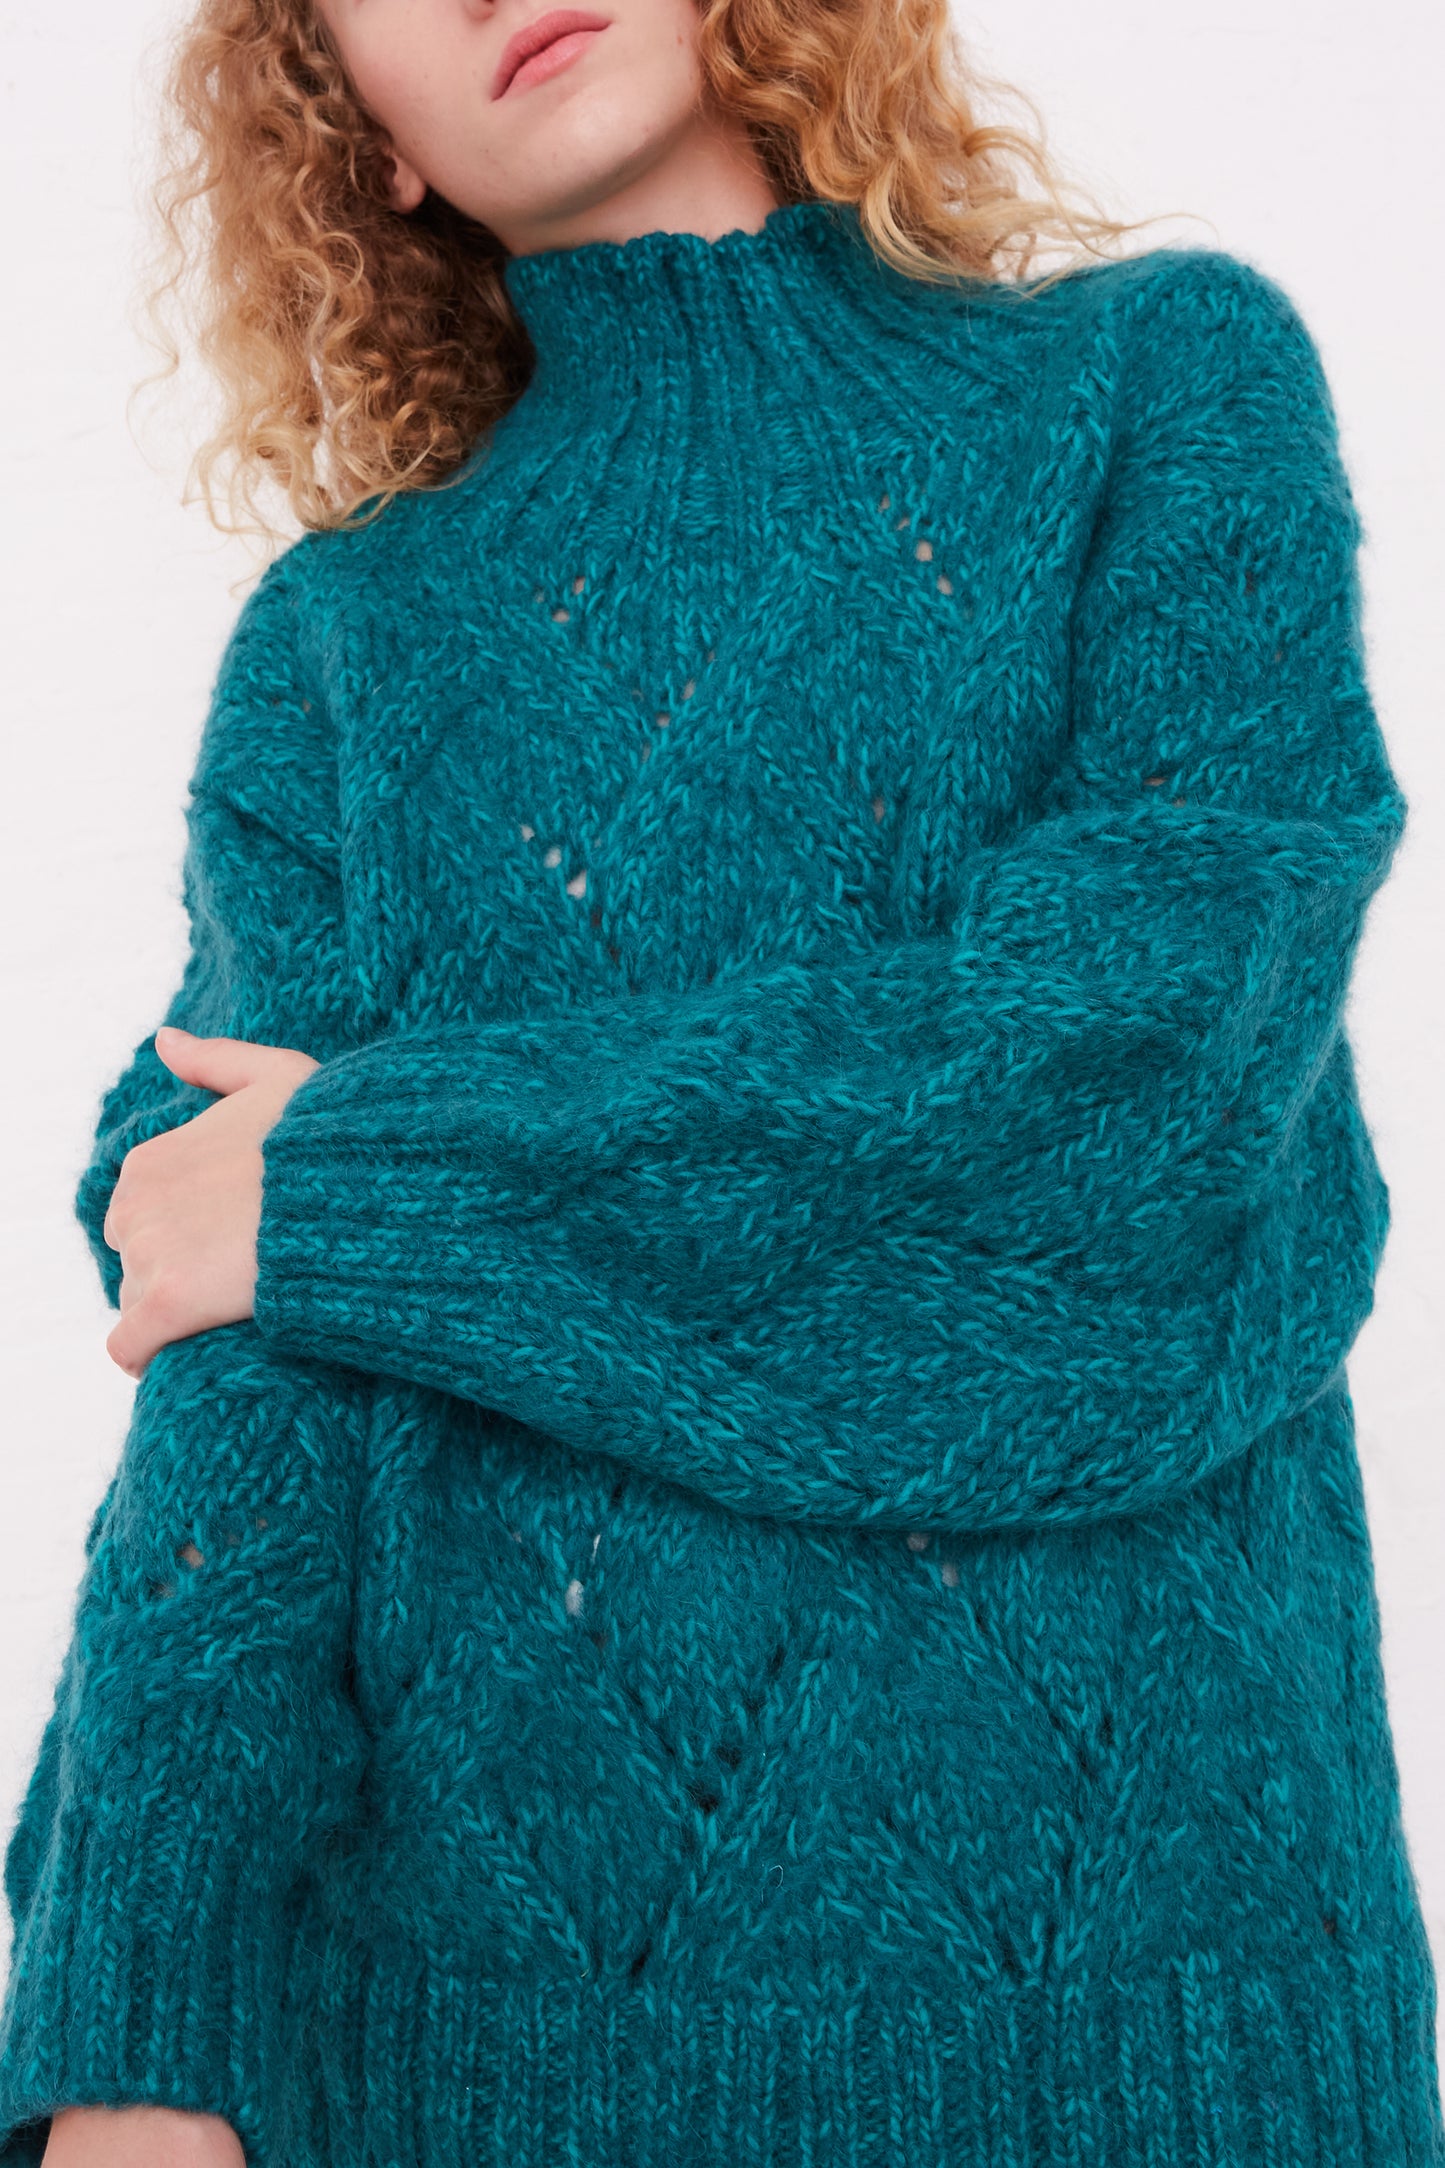 A woman wearing an Ichi Antiquités Hand-Knit Green Teal Wool and Alpaca Blend Turtleneck Sweater.